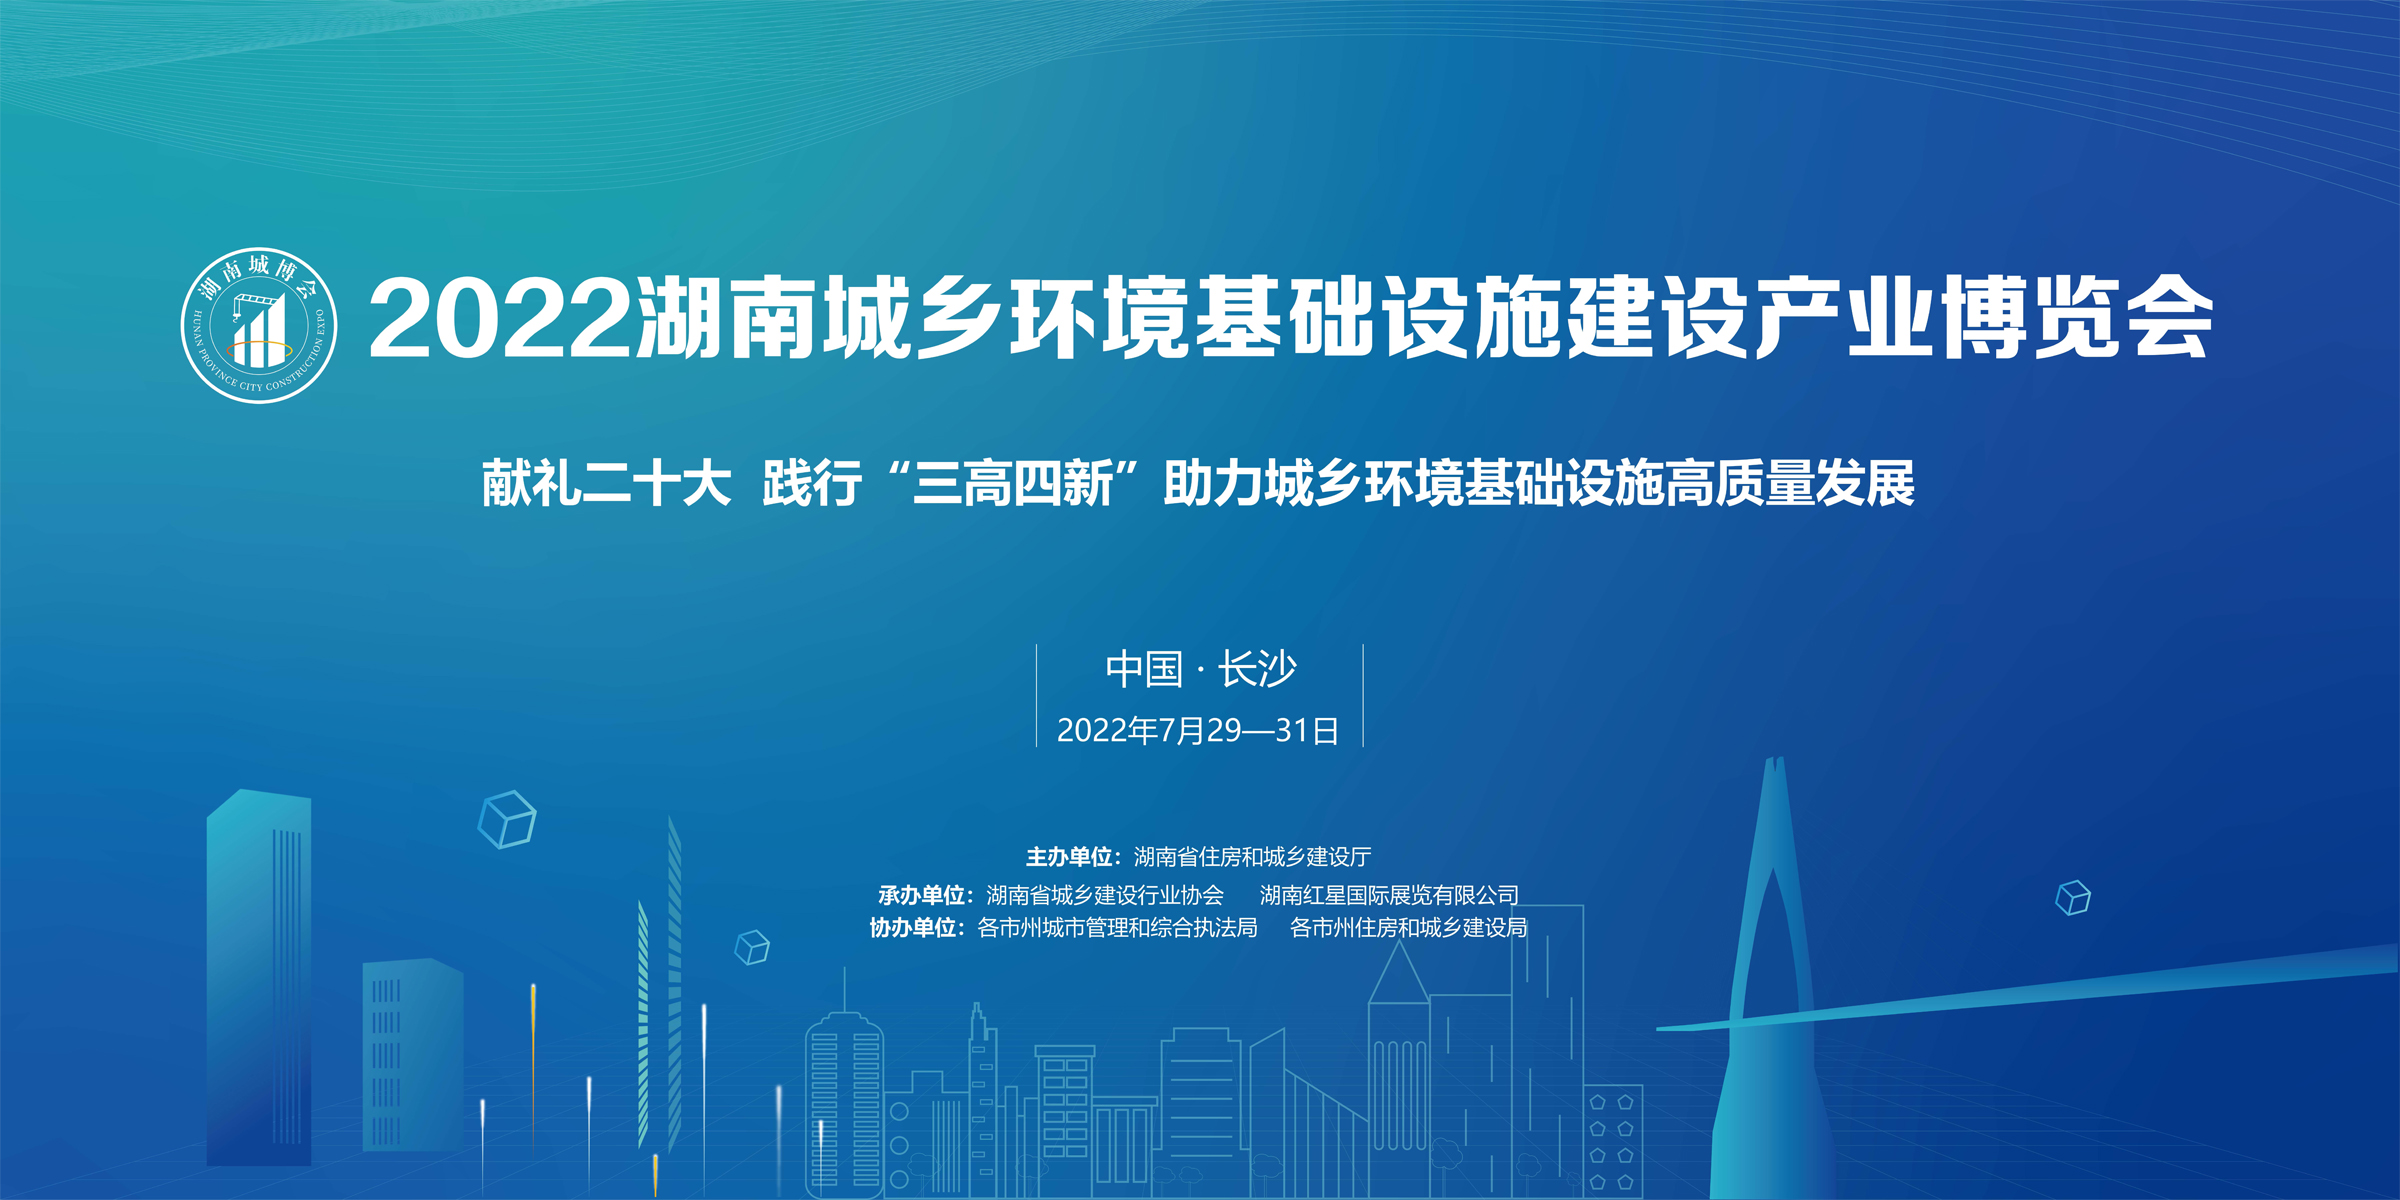 直播回顾丨2022湖南城乡环境基础设施建设产业博览会开幕